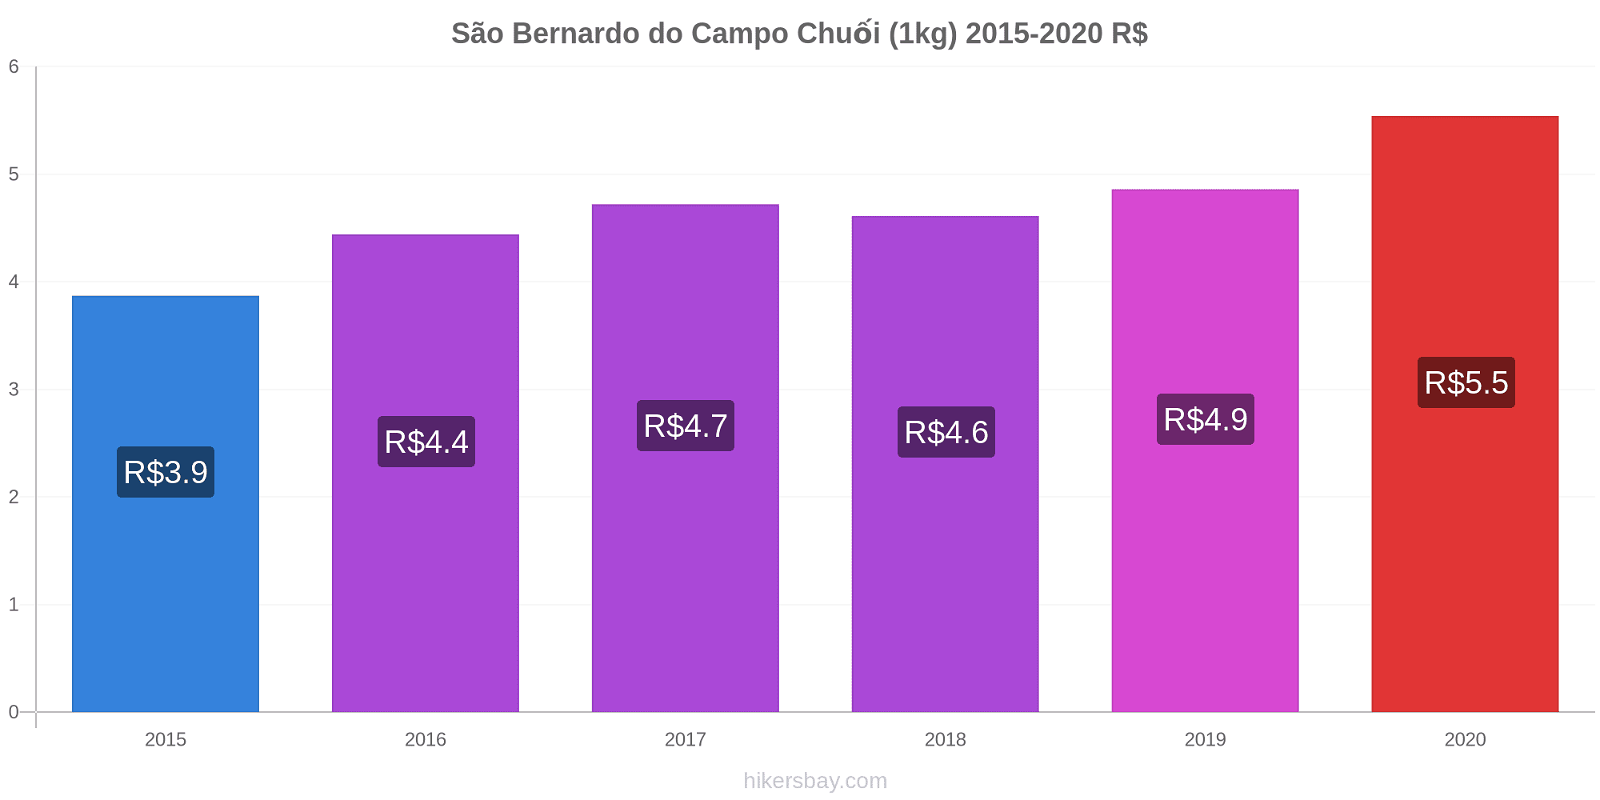 São Bernardo do Campo thay đổi giá Chuối (1kg) hikersbay.com